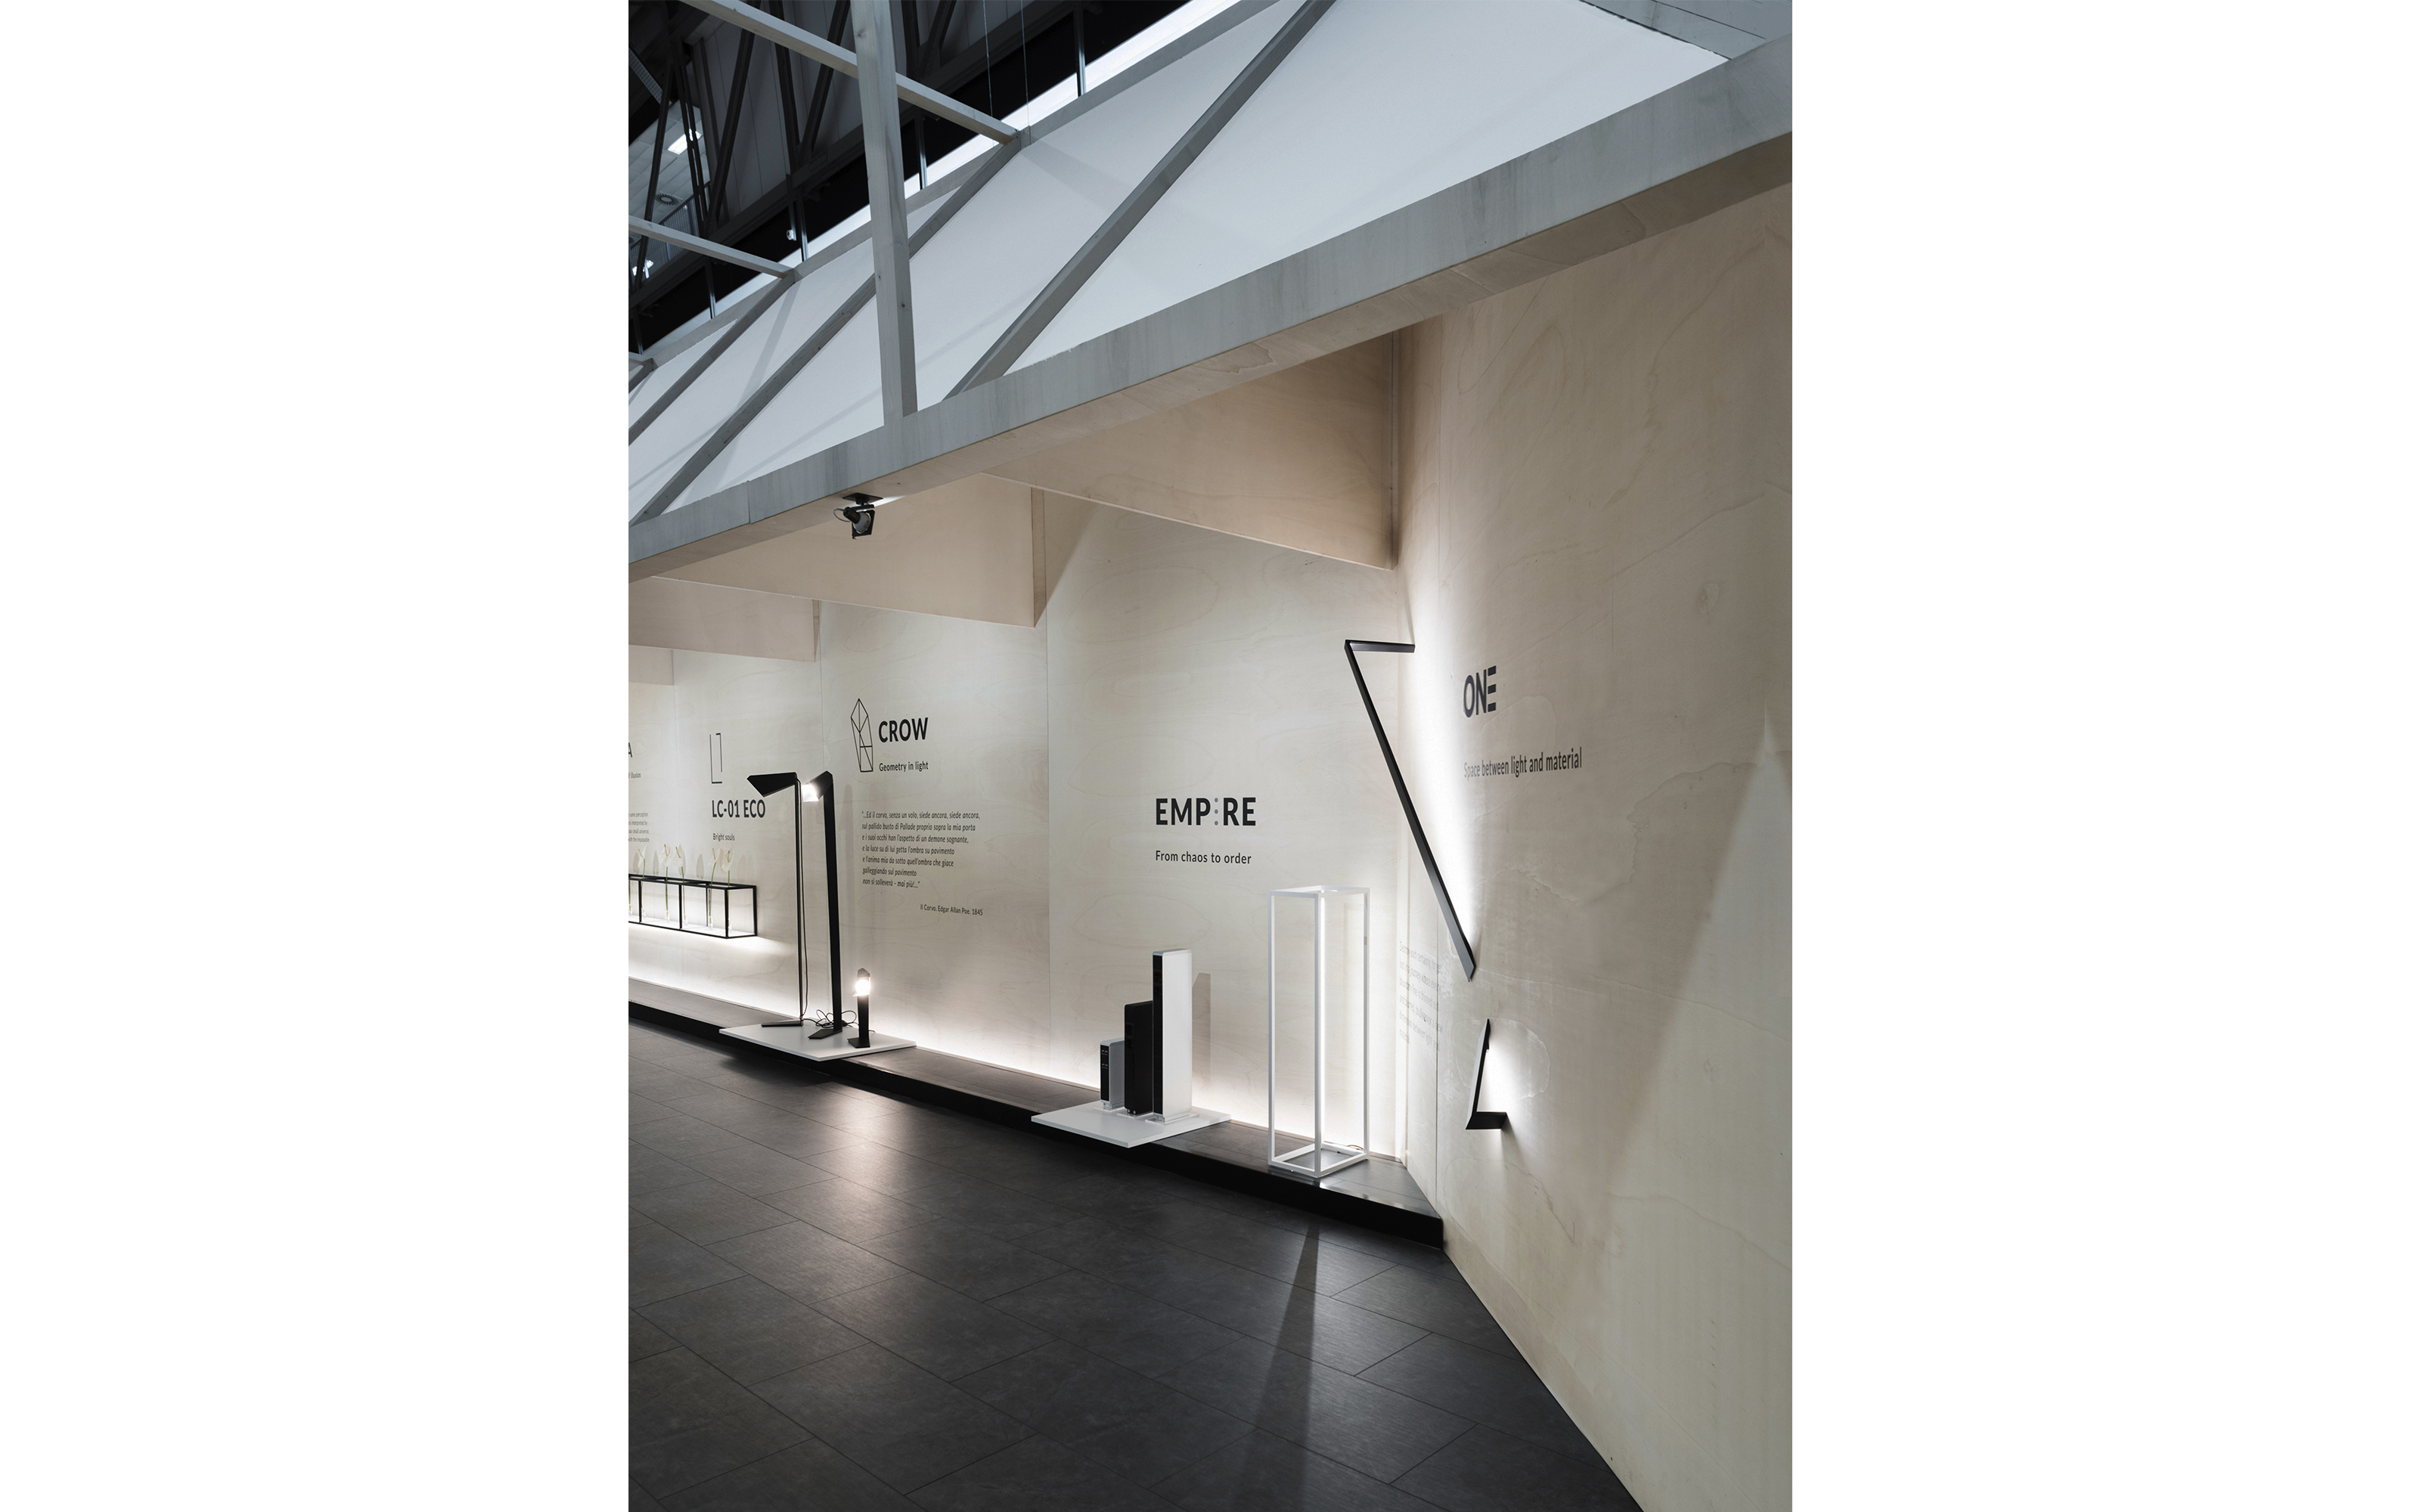 Temporary pavillion / Salone del mobile 2019